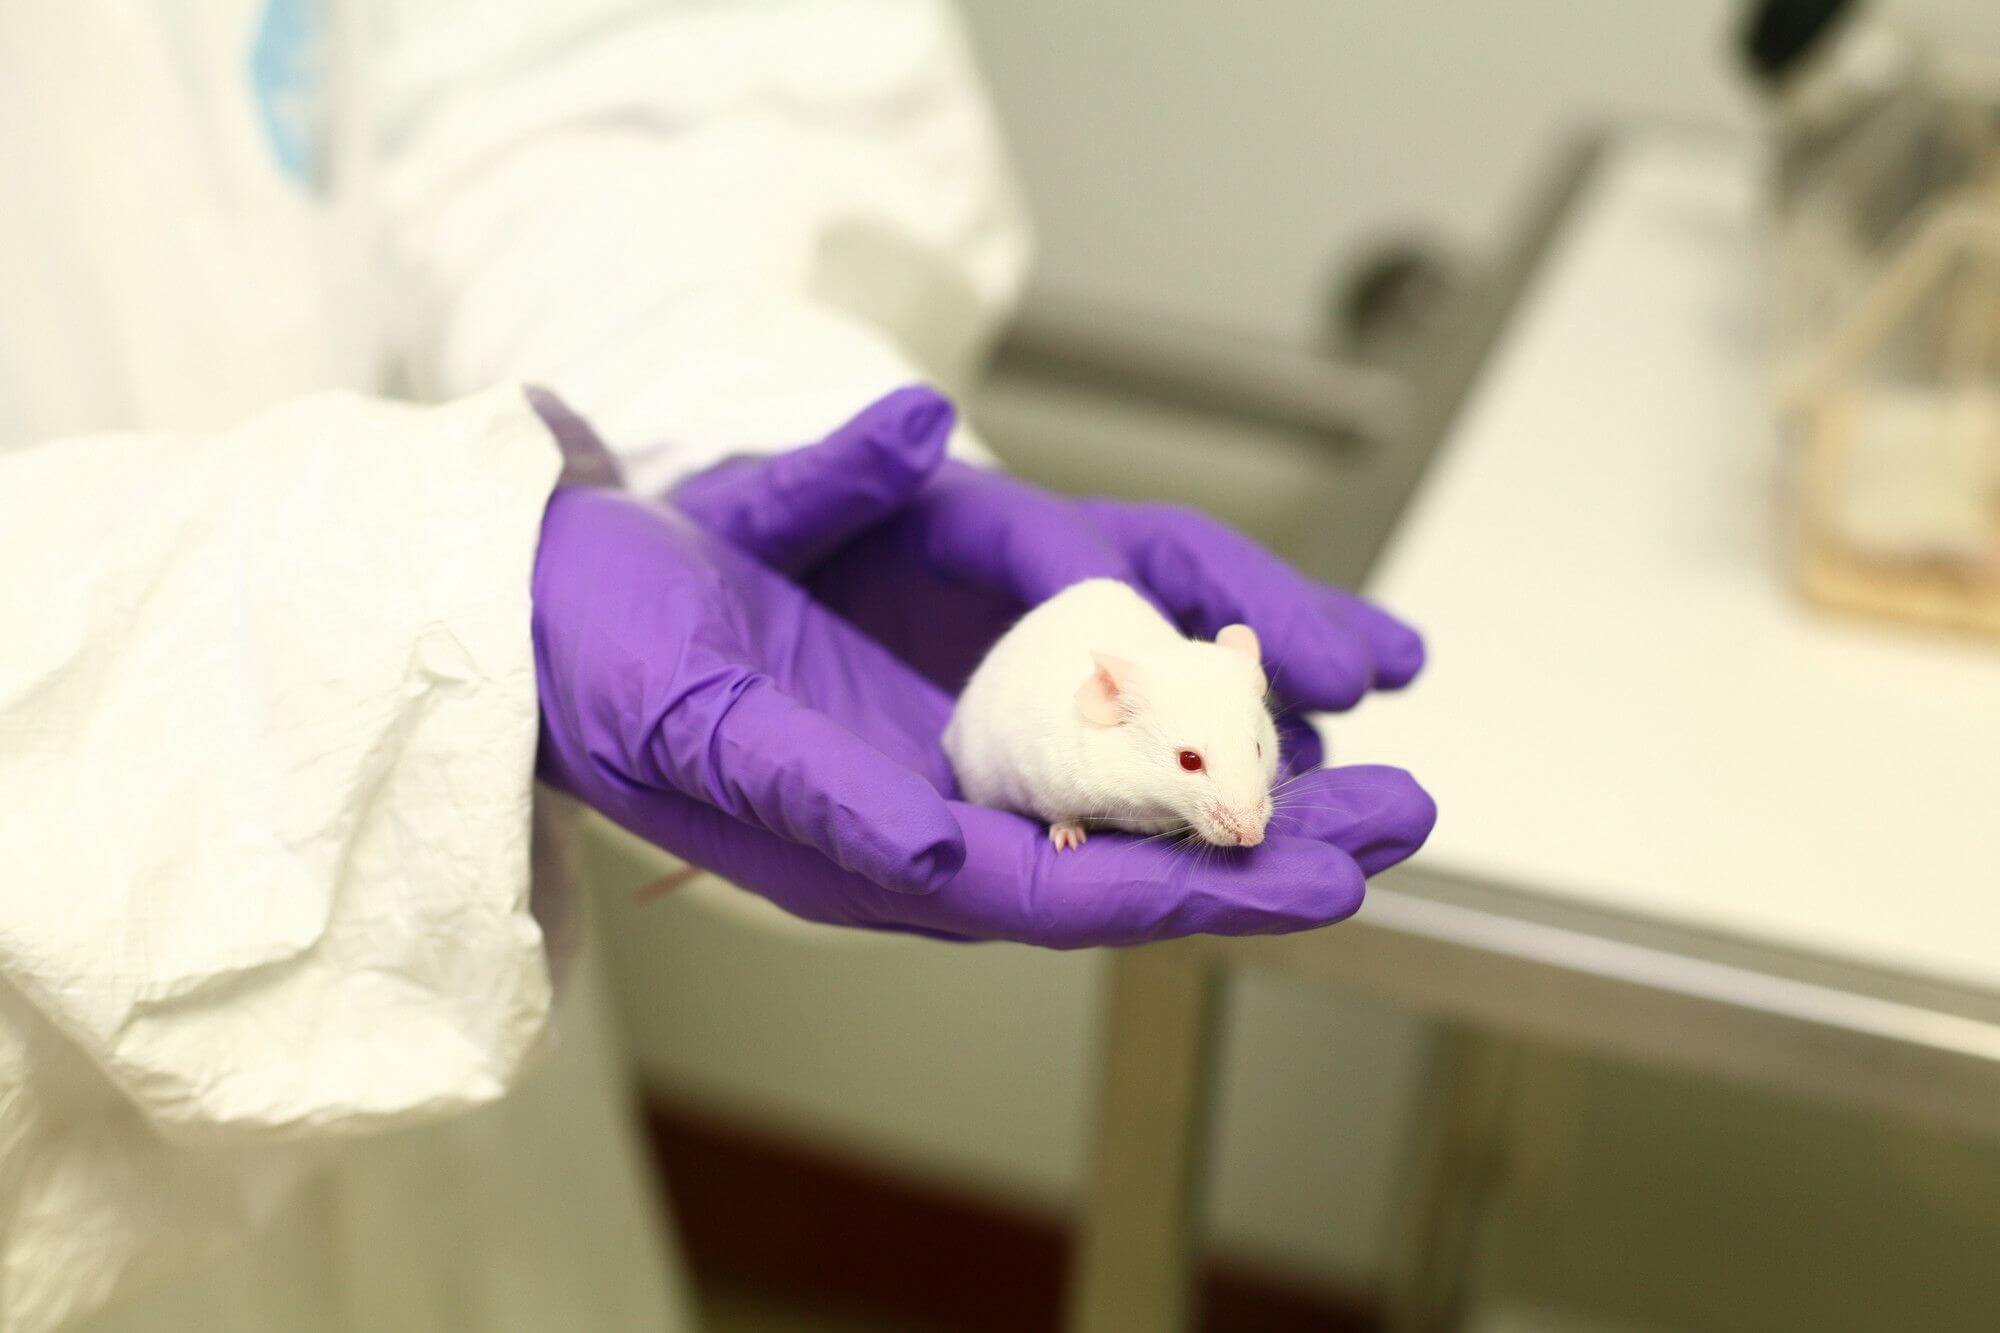 Čeští vědci pomohli vyvinout unikátní myší model pro studium střevního mikrobiomu